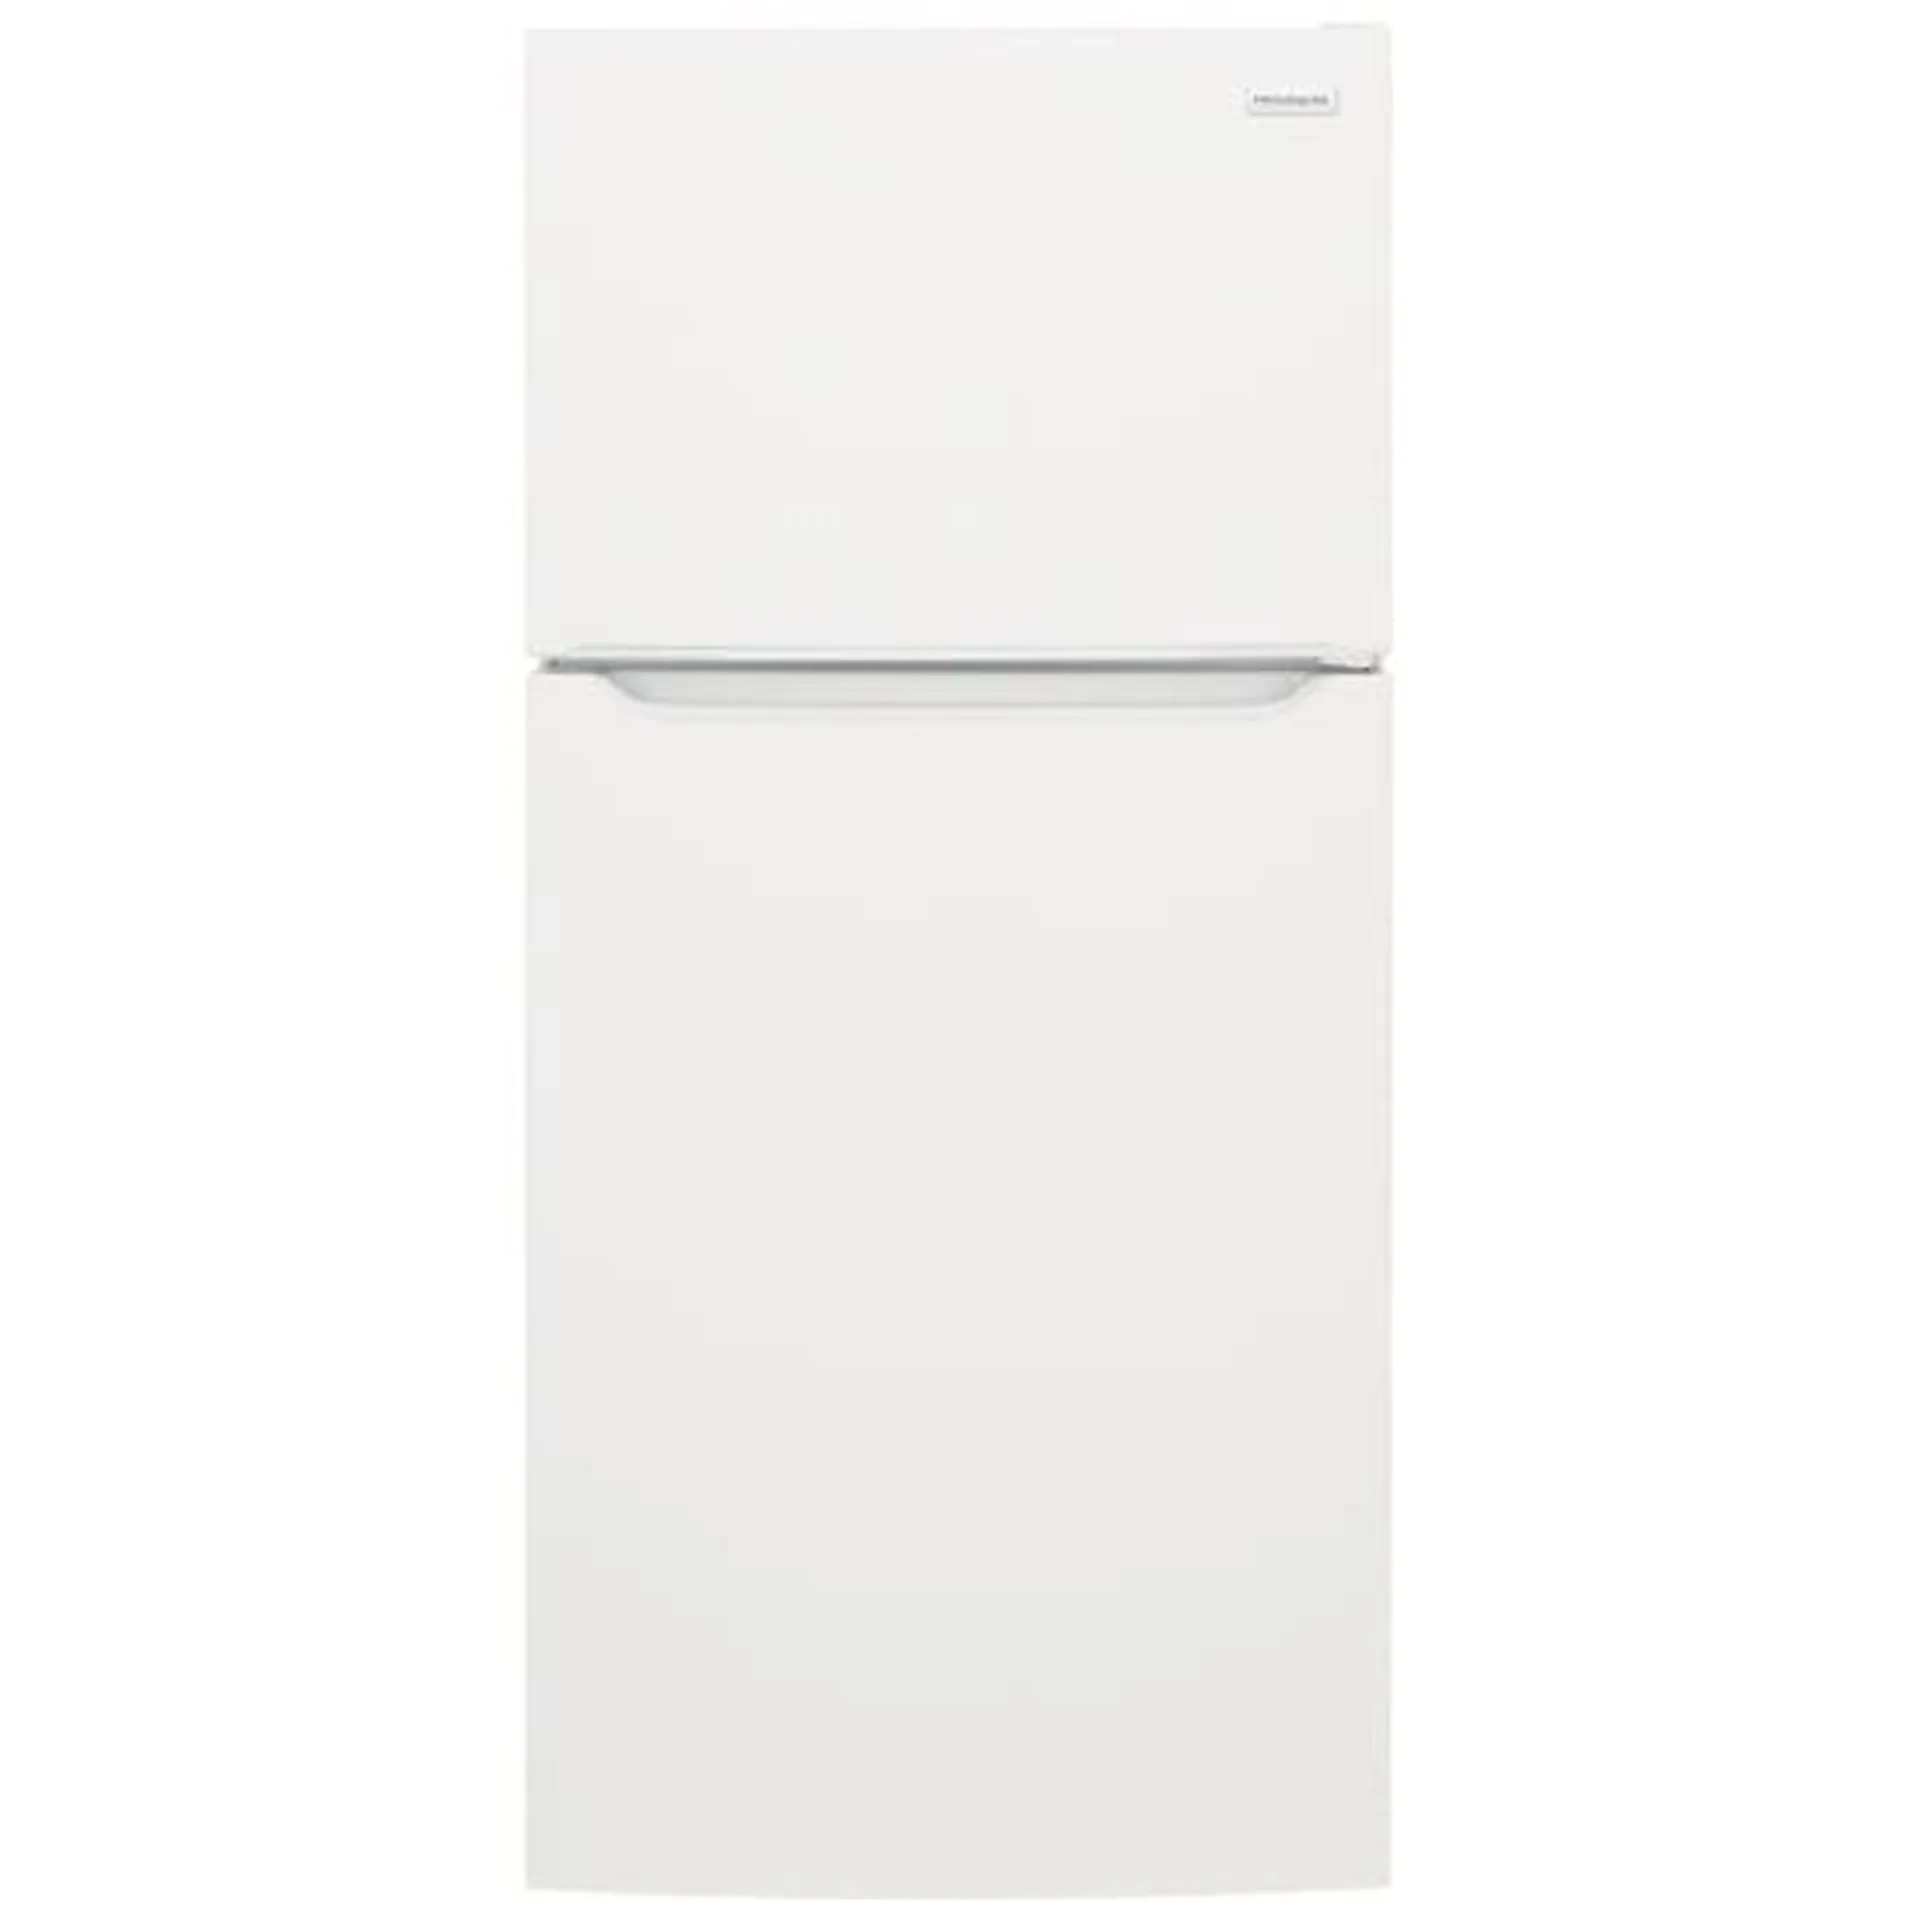 Frigidaire FFTR2045VW Top Freezer Refrigerator, 30 inch Width, 19.6 cu. ft. Capacity, White colour